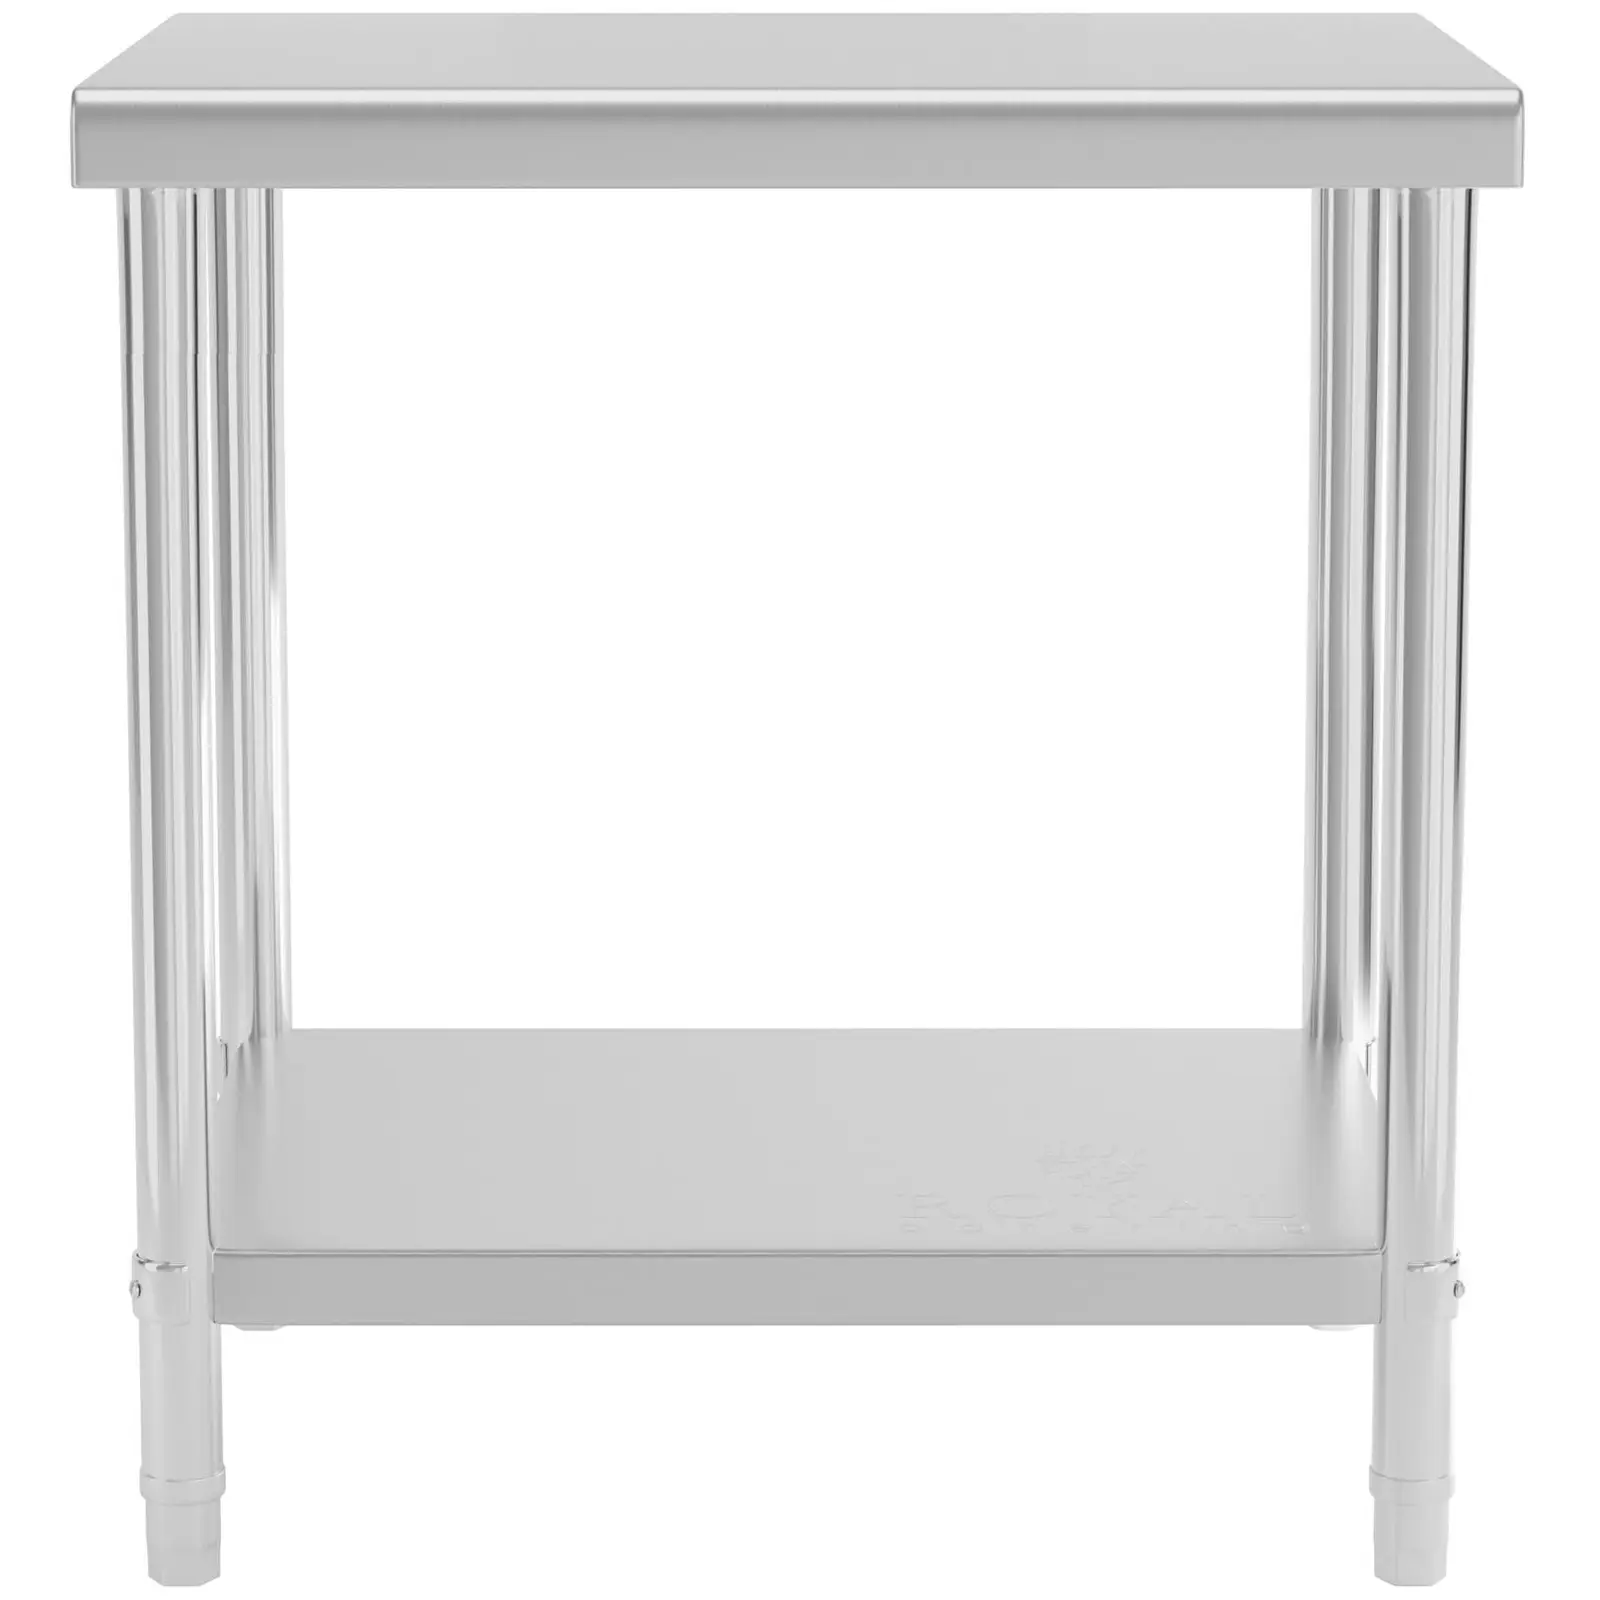 Pracovný stôl z ušľachtilej ocele - 80 x 60 cm - nosnosť 190 kg